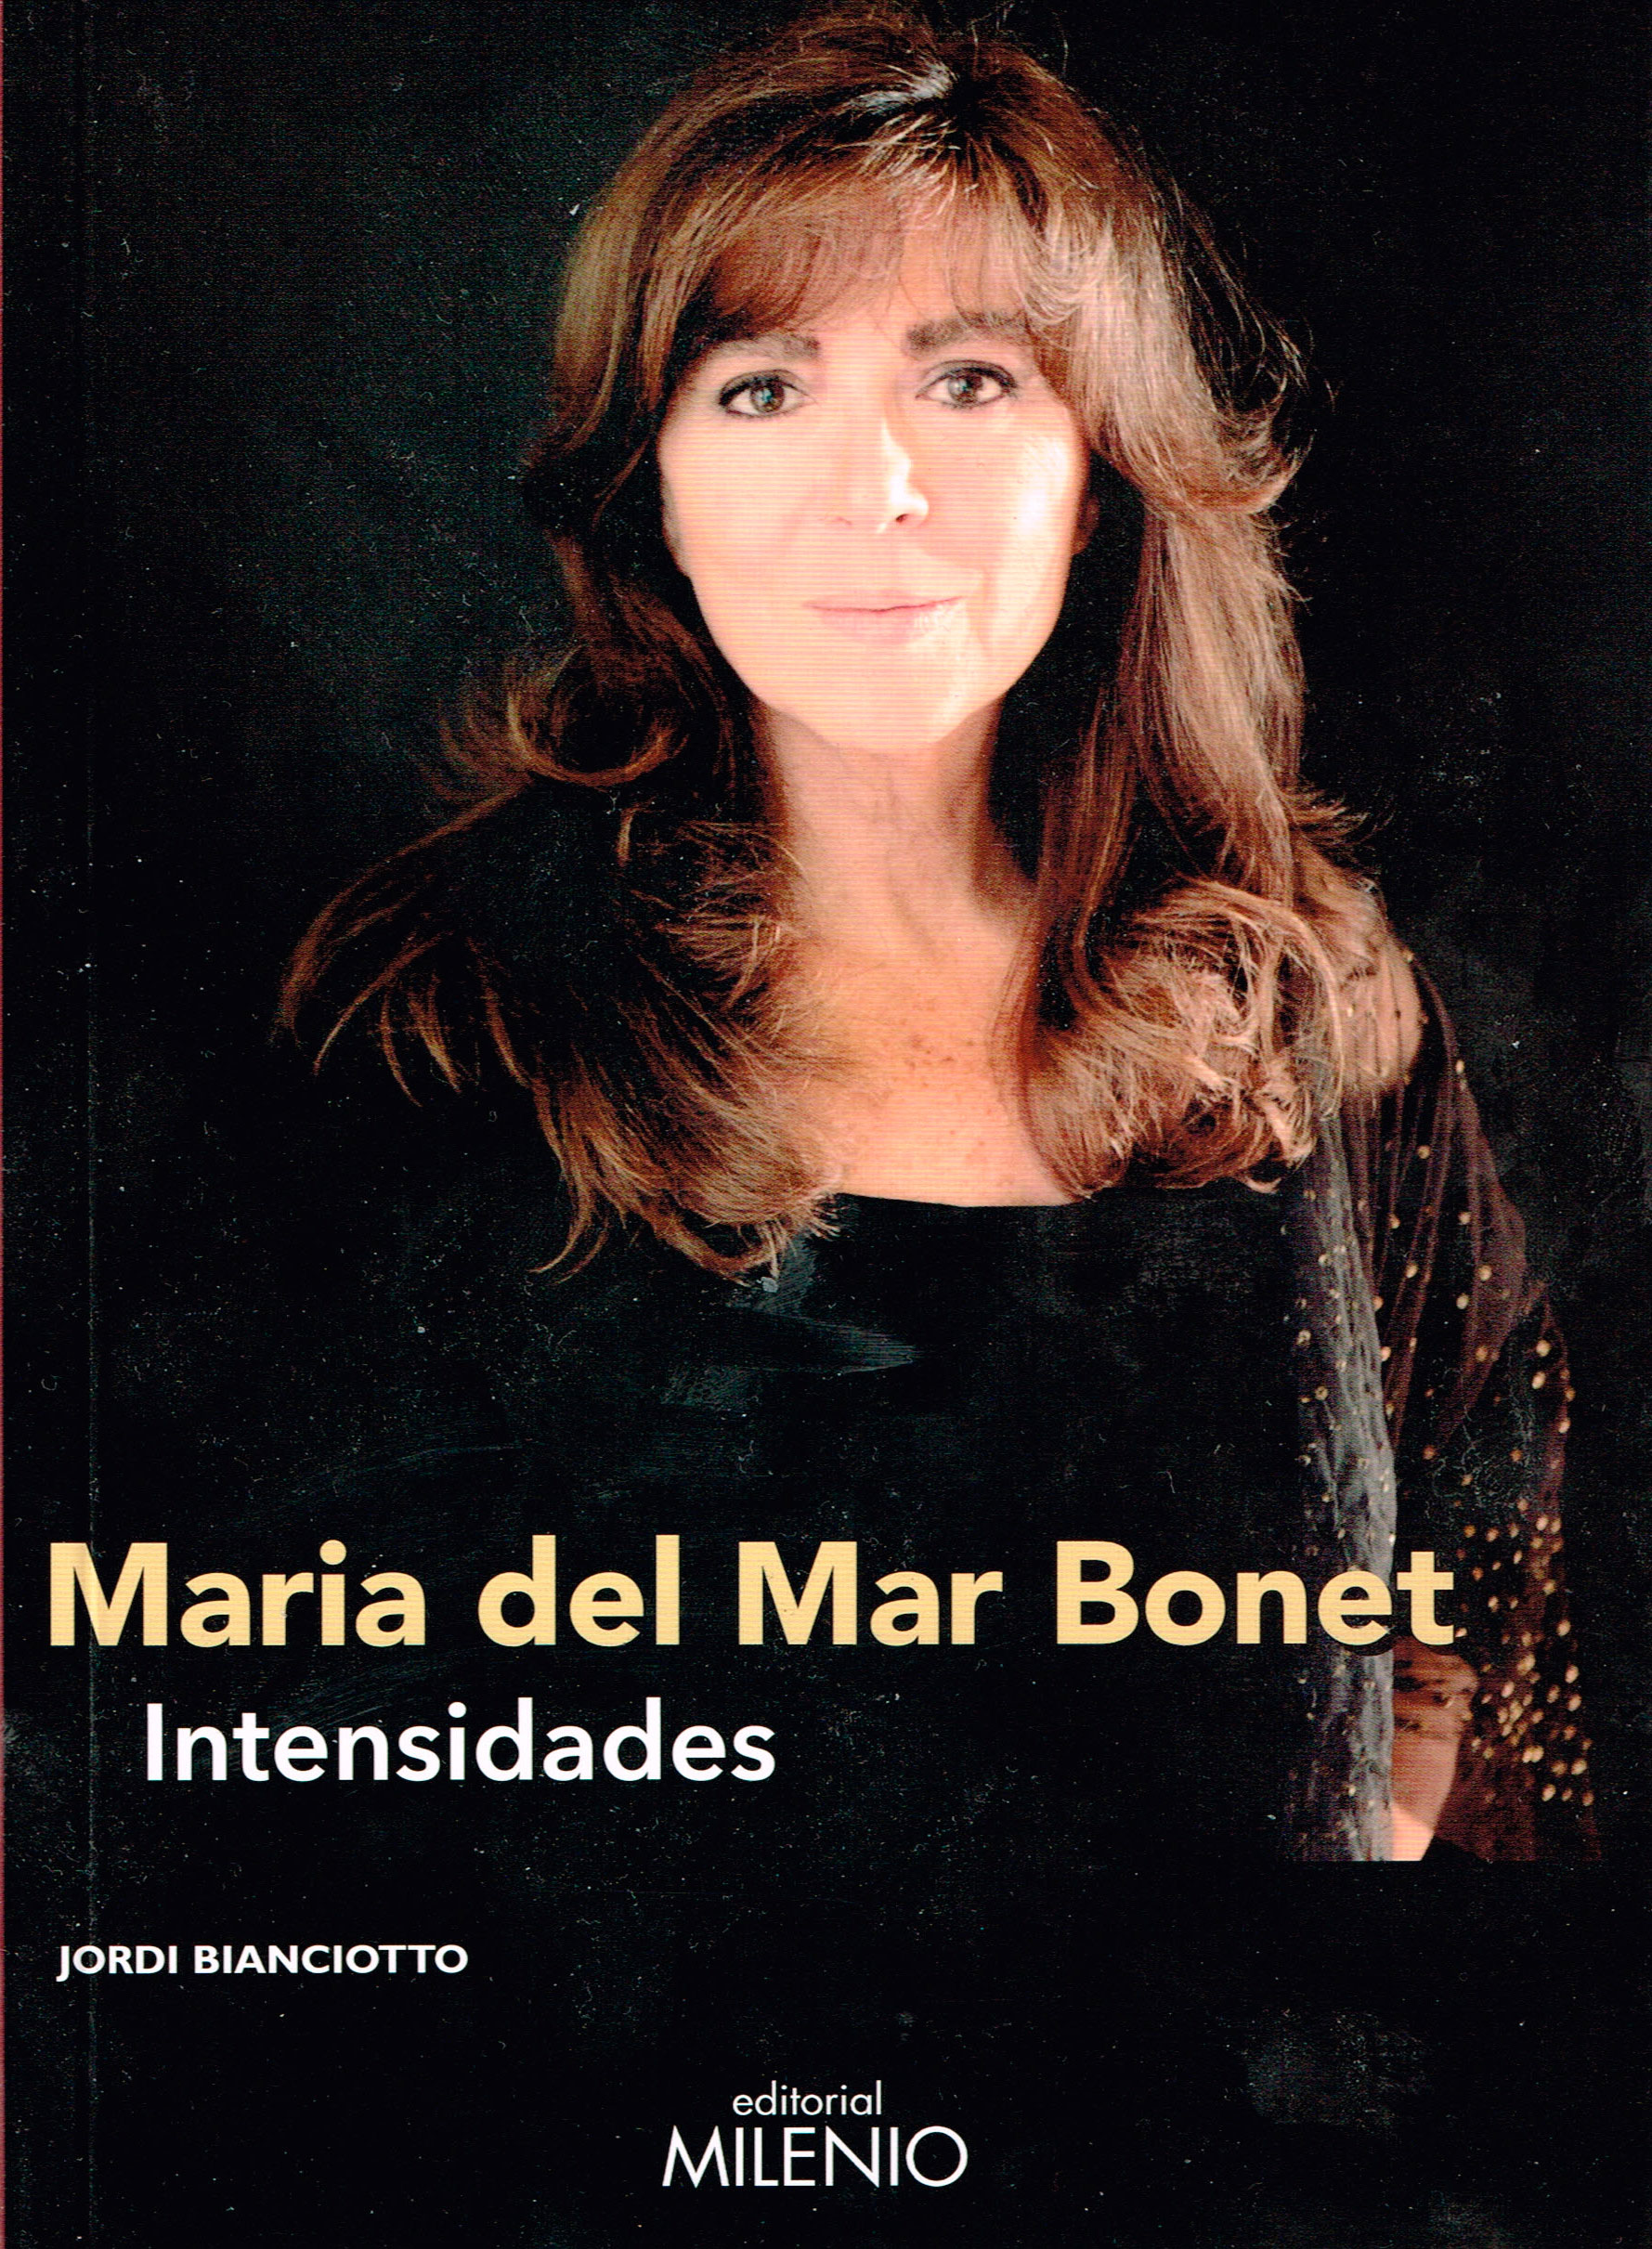 Mª Mar Bonet, intensely